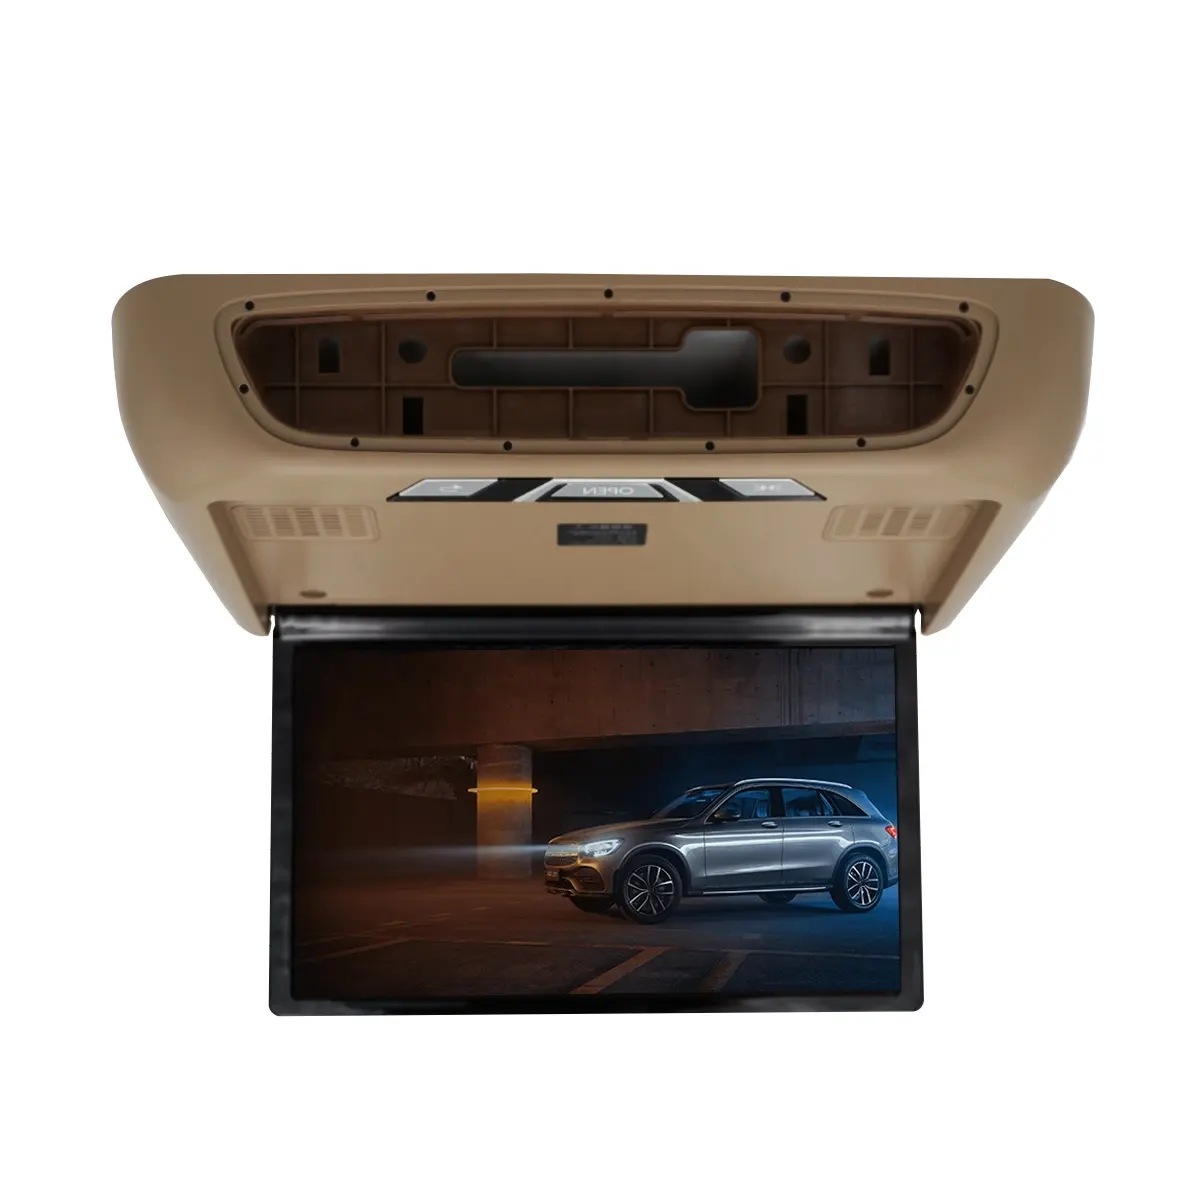 Djzg monitor para teto de carro, monitor para teto de carro e tv lcd 16 polegadas, para mercedes v classe w447